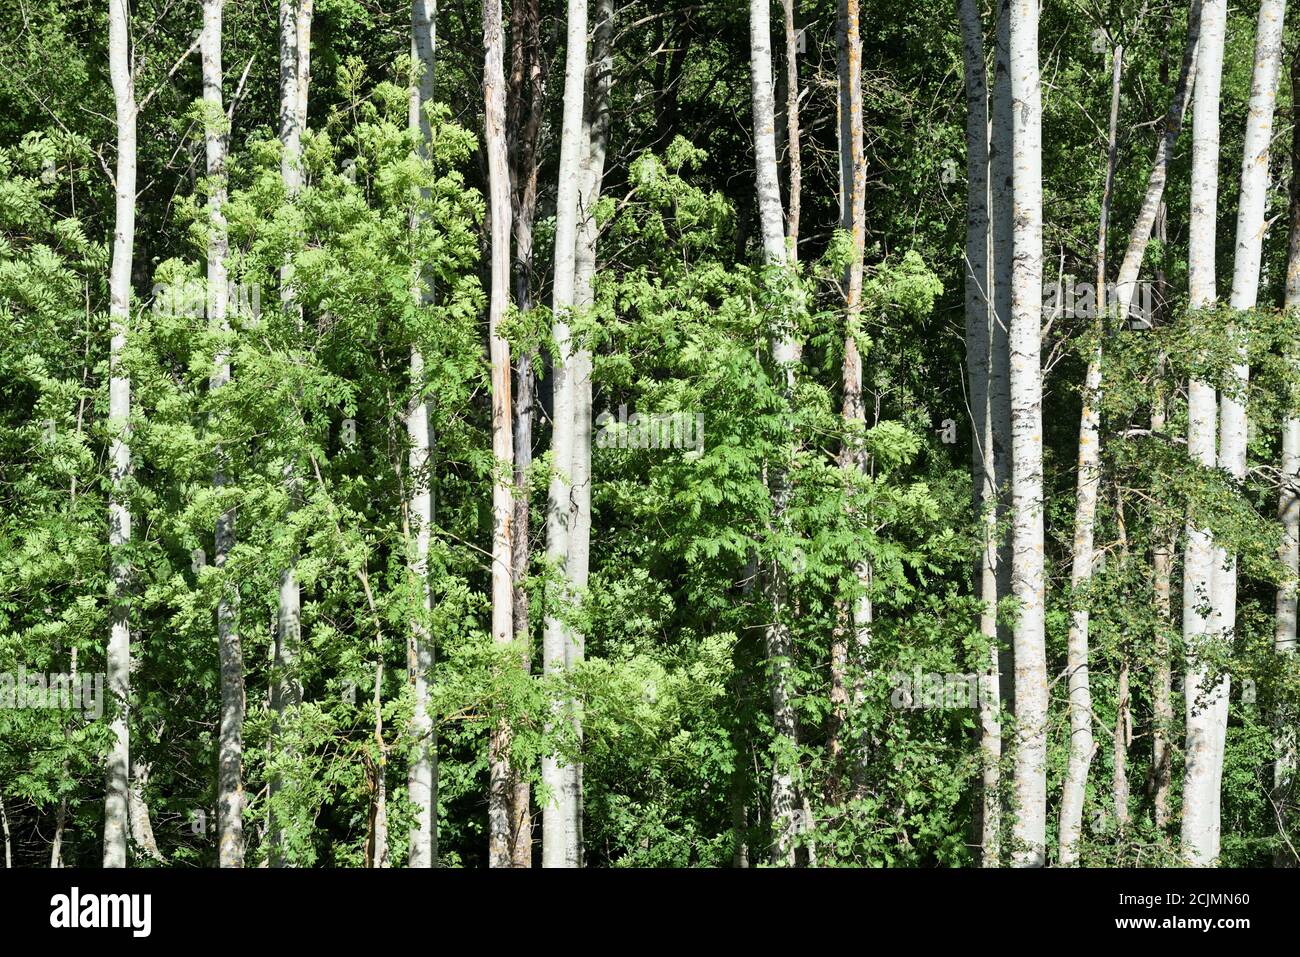 Linea o riga di pioppi bianchi, populus alba, alias pioppi d'argento o pioppi a foglia di argento che mostrano tratti caratteristici dell'albero bianco Foto Stock